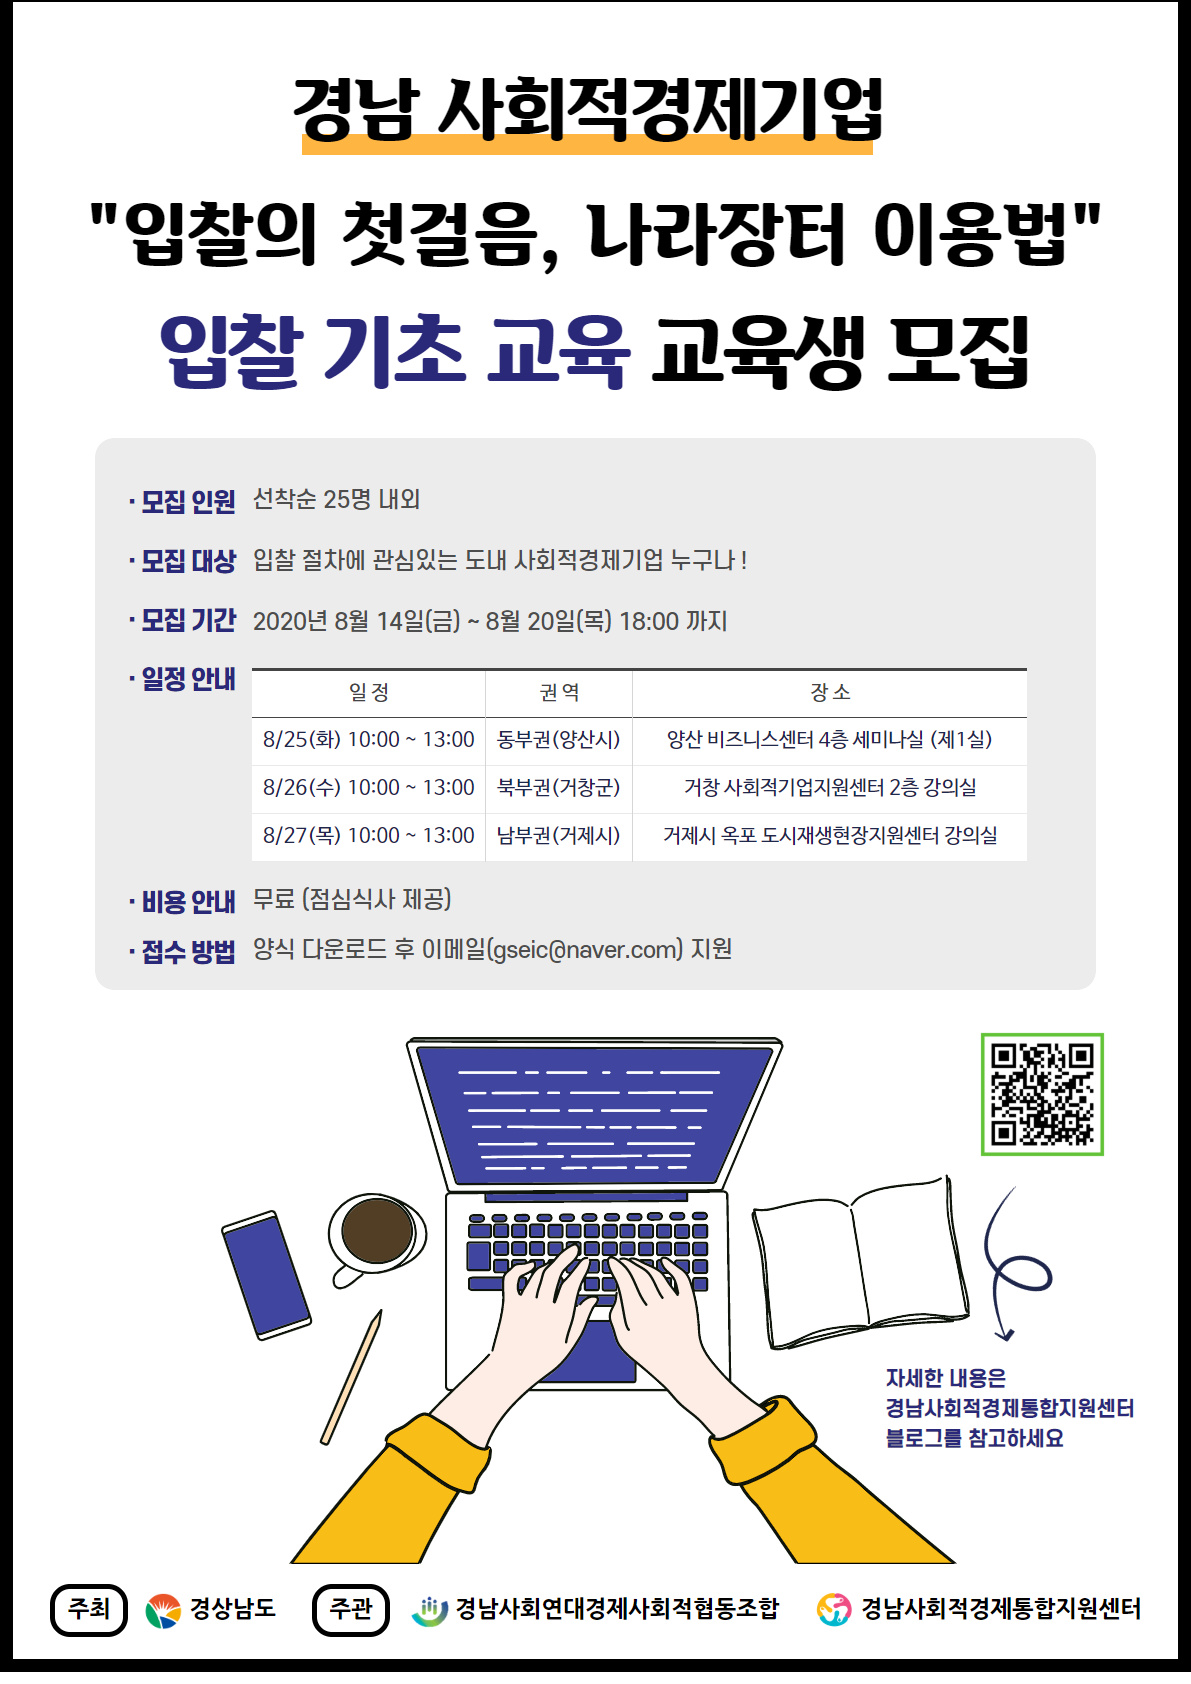 경남사회적경제기업권역별입찰기초교육웹포스터.jpg